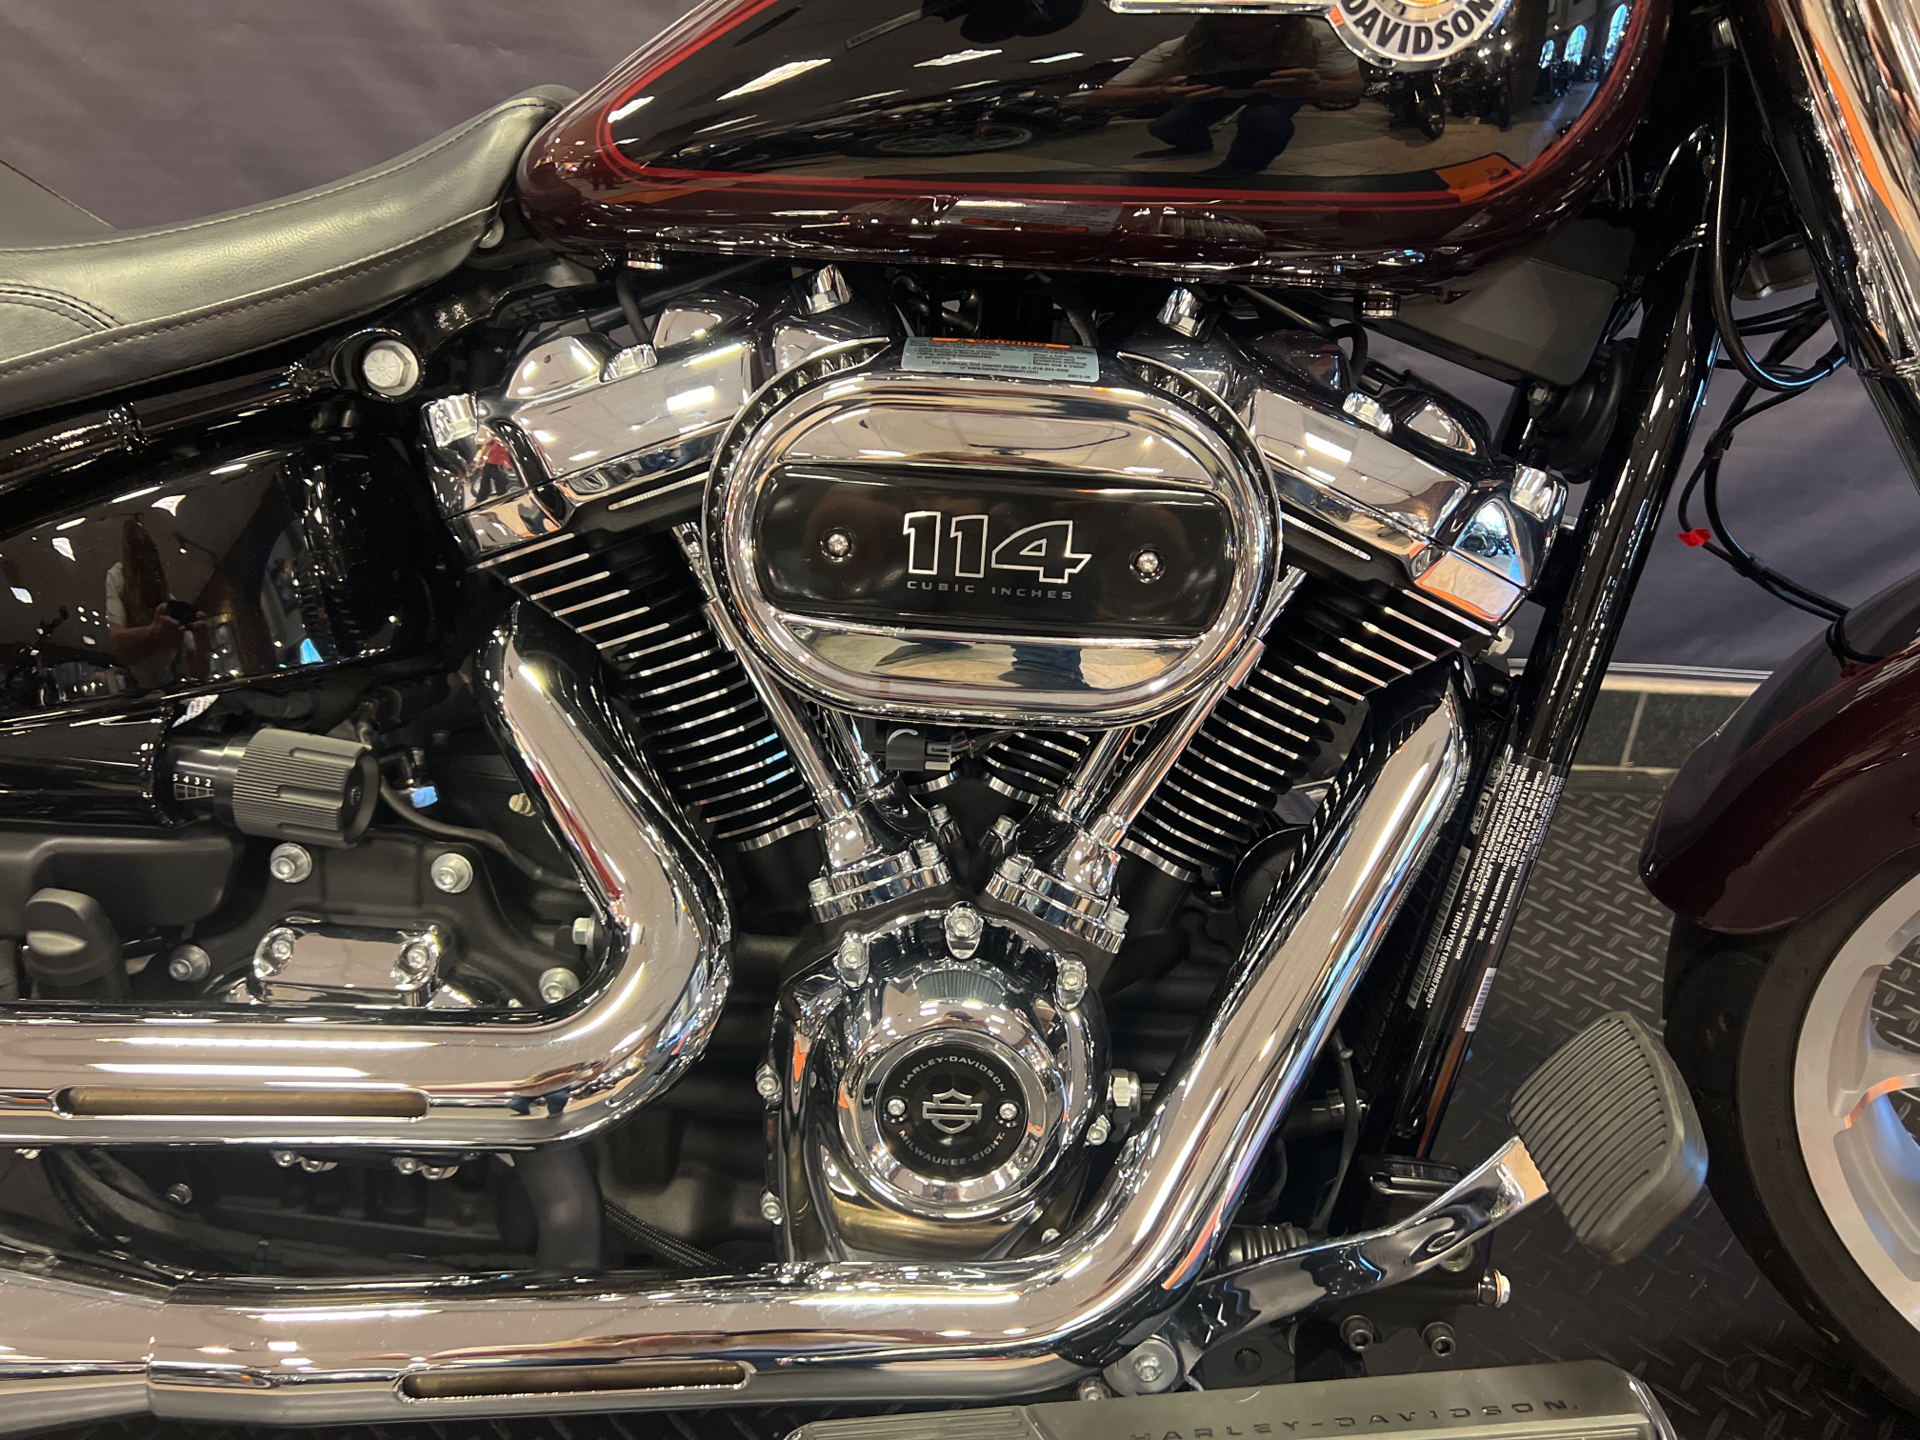 2022 Harley-Davidson Fat Boy® 114 in Burlington, North Carolina - Photo 3